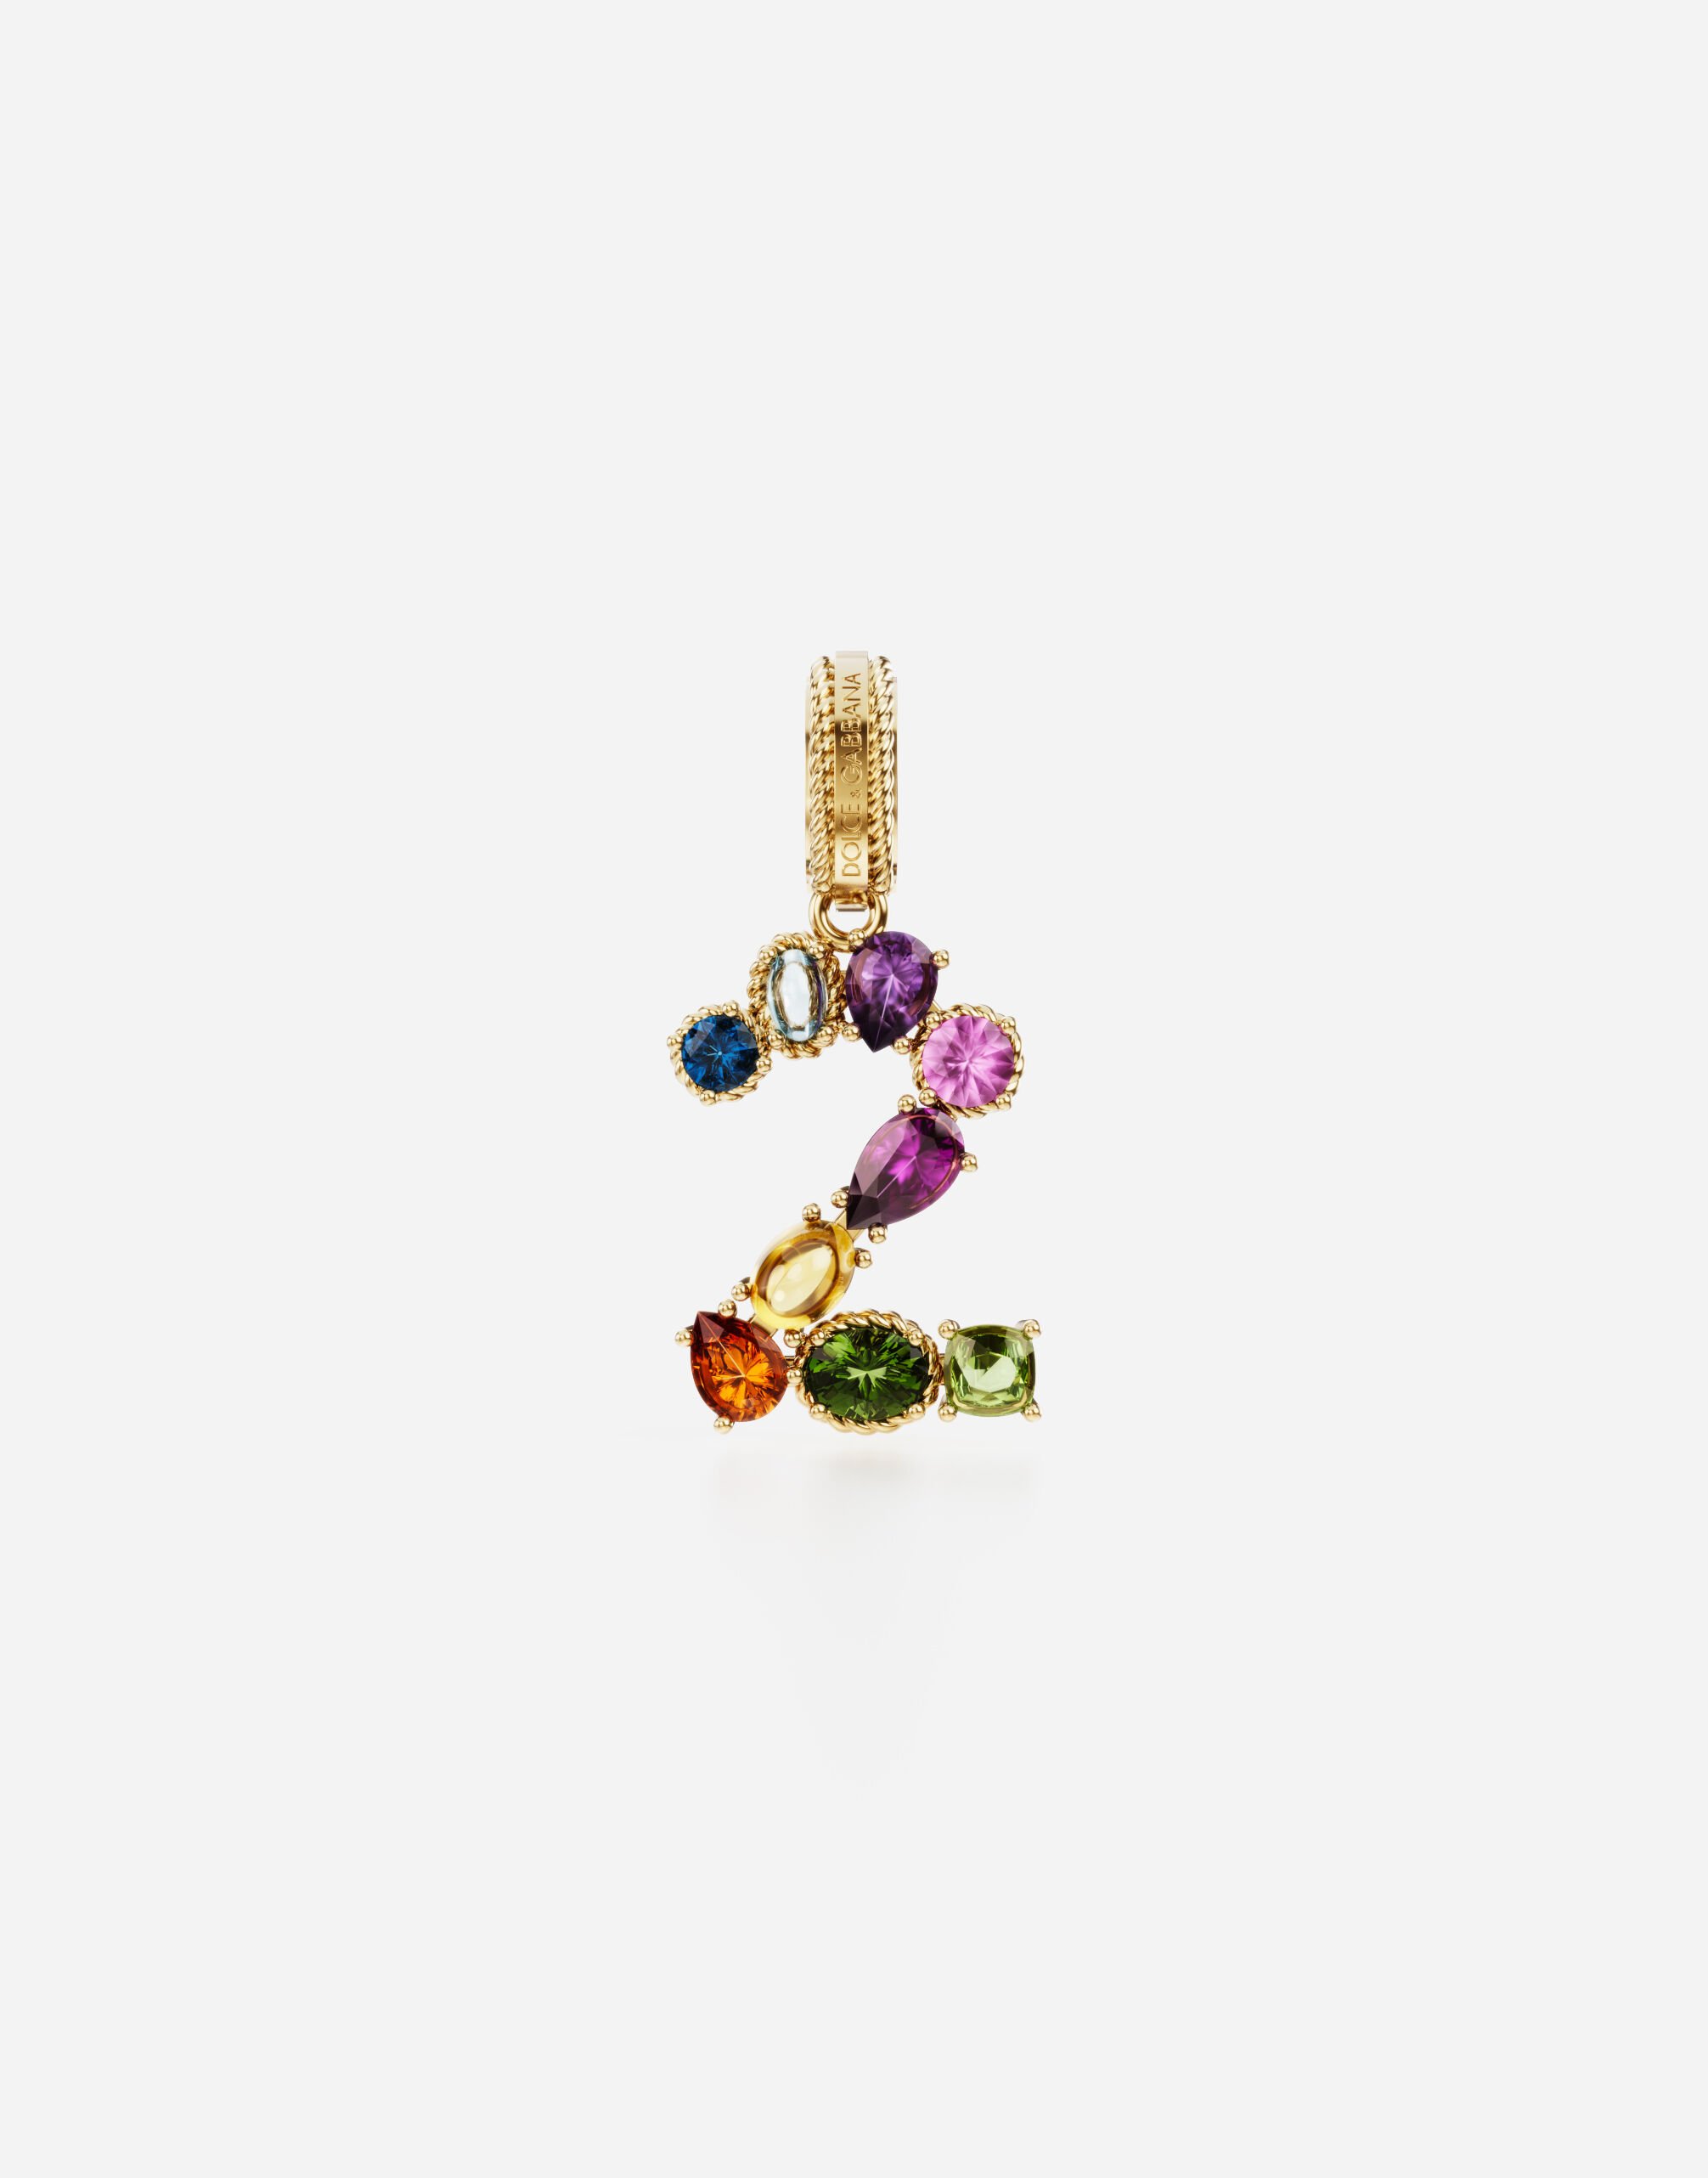 Dolce & Gabbana Anhänger „Rainbow“ aus 18 kt Gelbgold mit mehrfarbigen Edelsteinen, die die Zahl 2 darstellen GOLD WANR1GWMIXD